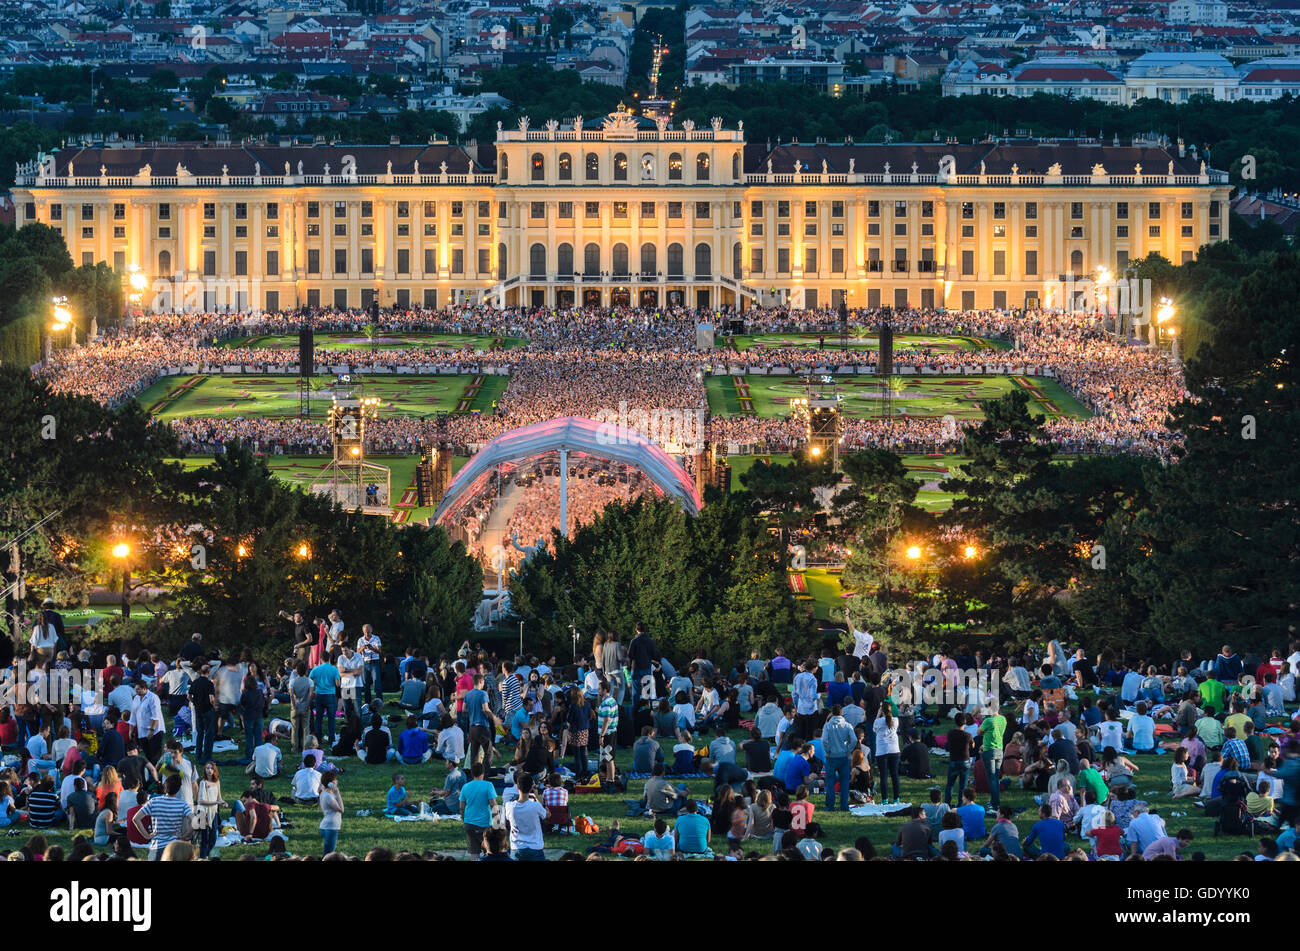 Wien, Viena: Noche de Verano Concierto de la Filarmónica de Viena, en el parque del palacio de Schönbrunn, Austria, Wien, 13. Foto de stock